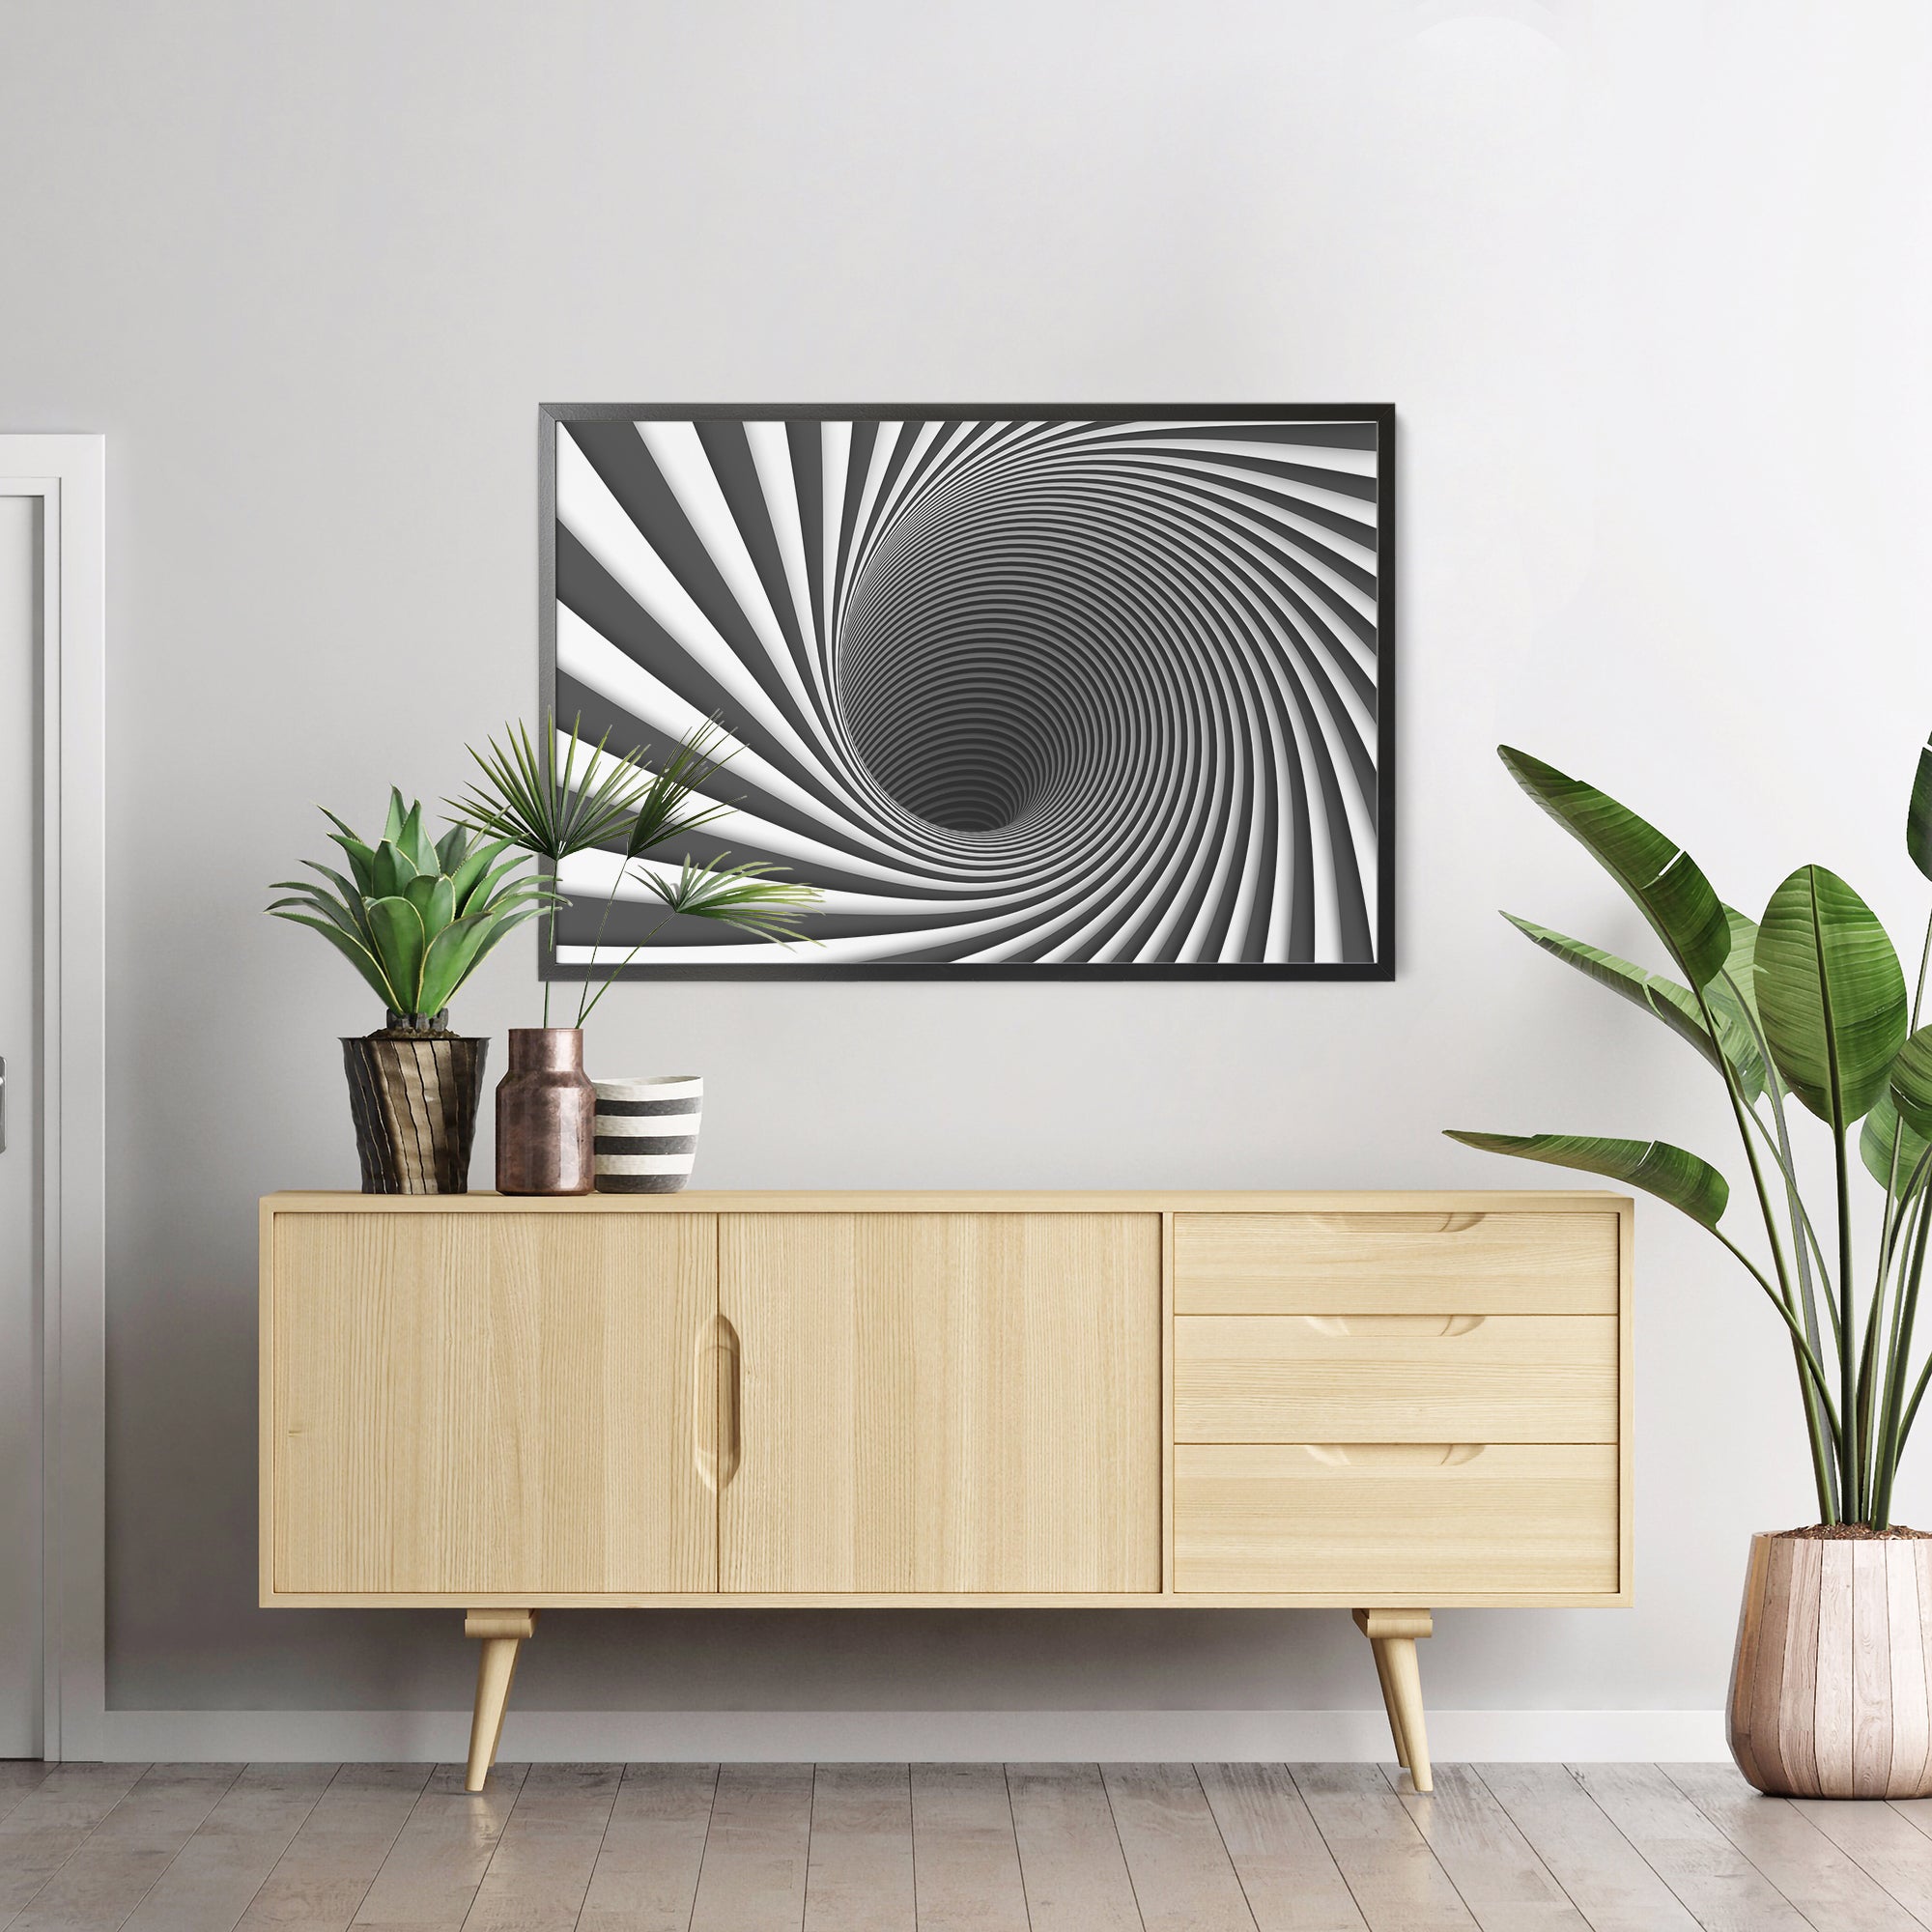 Foto obraz w ramie - Abstrakcja, tunel i spirala (czarno-biały) - Gallart.pl